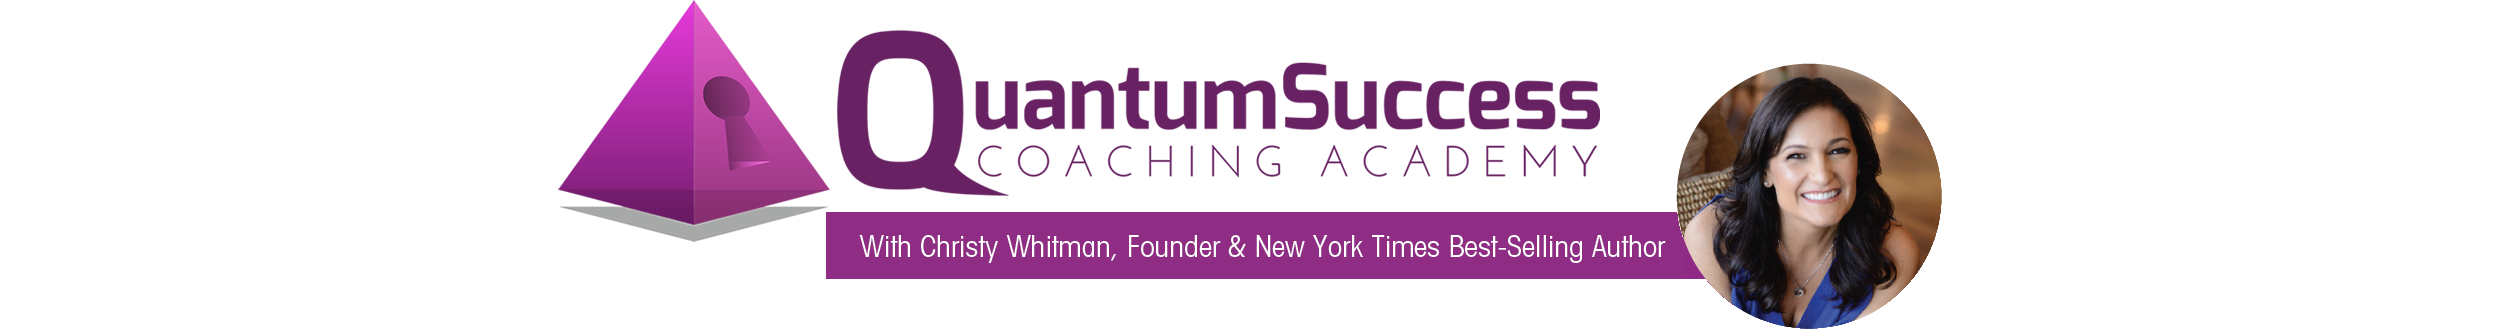 Quantum Success Coaching Academy